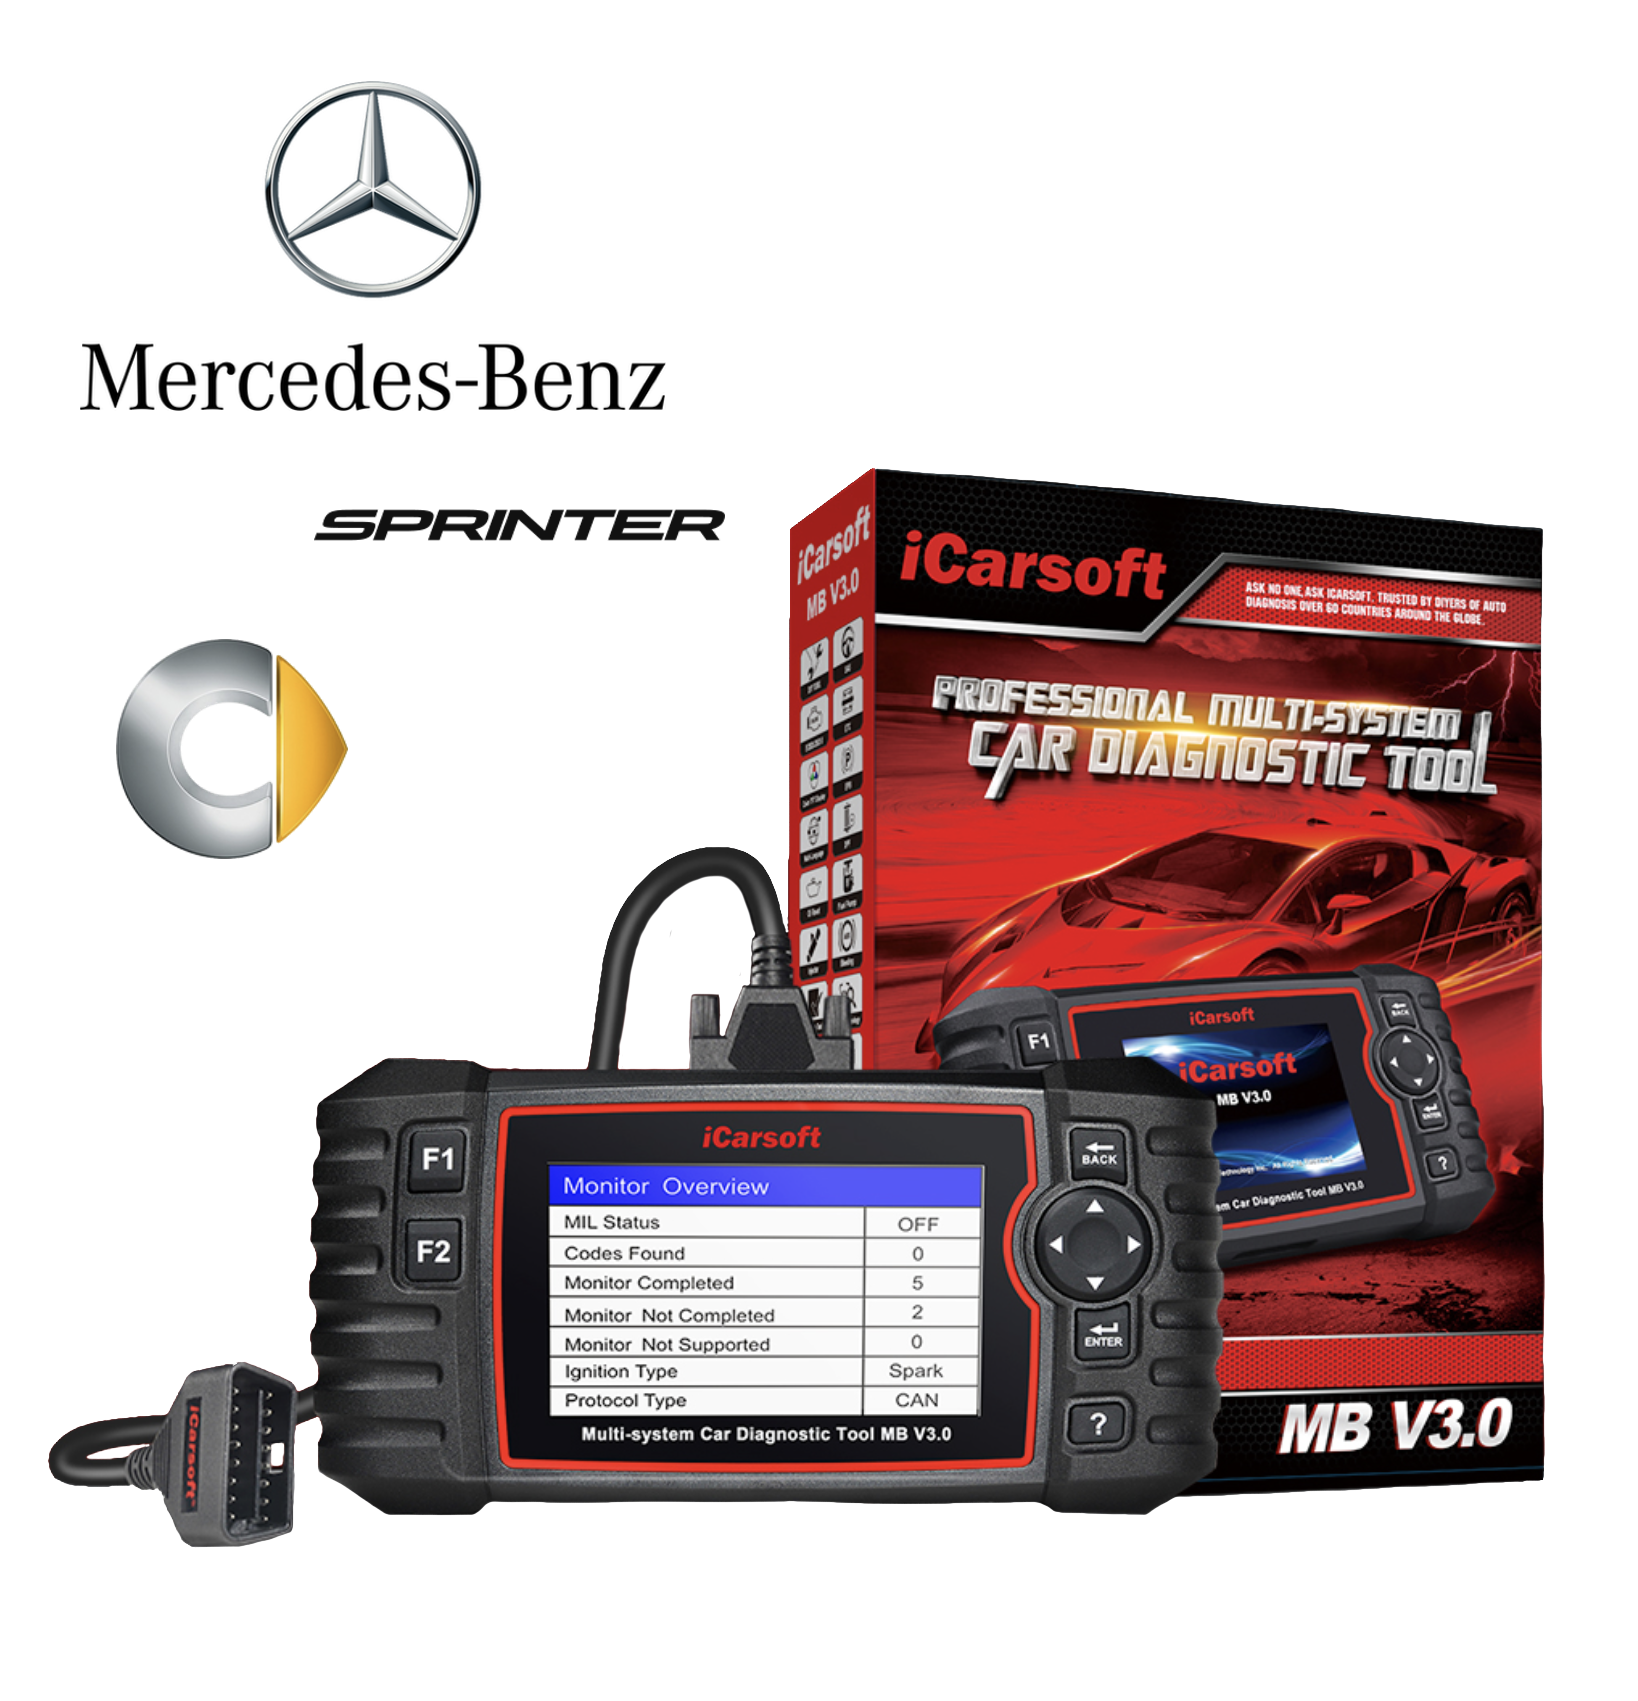 iCarsoft MB V2.0 iCarsoft UK Mercedes Professional Diagnostic Scan Tool 